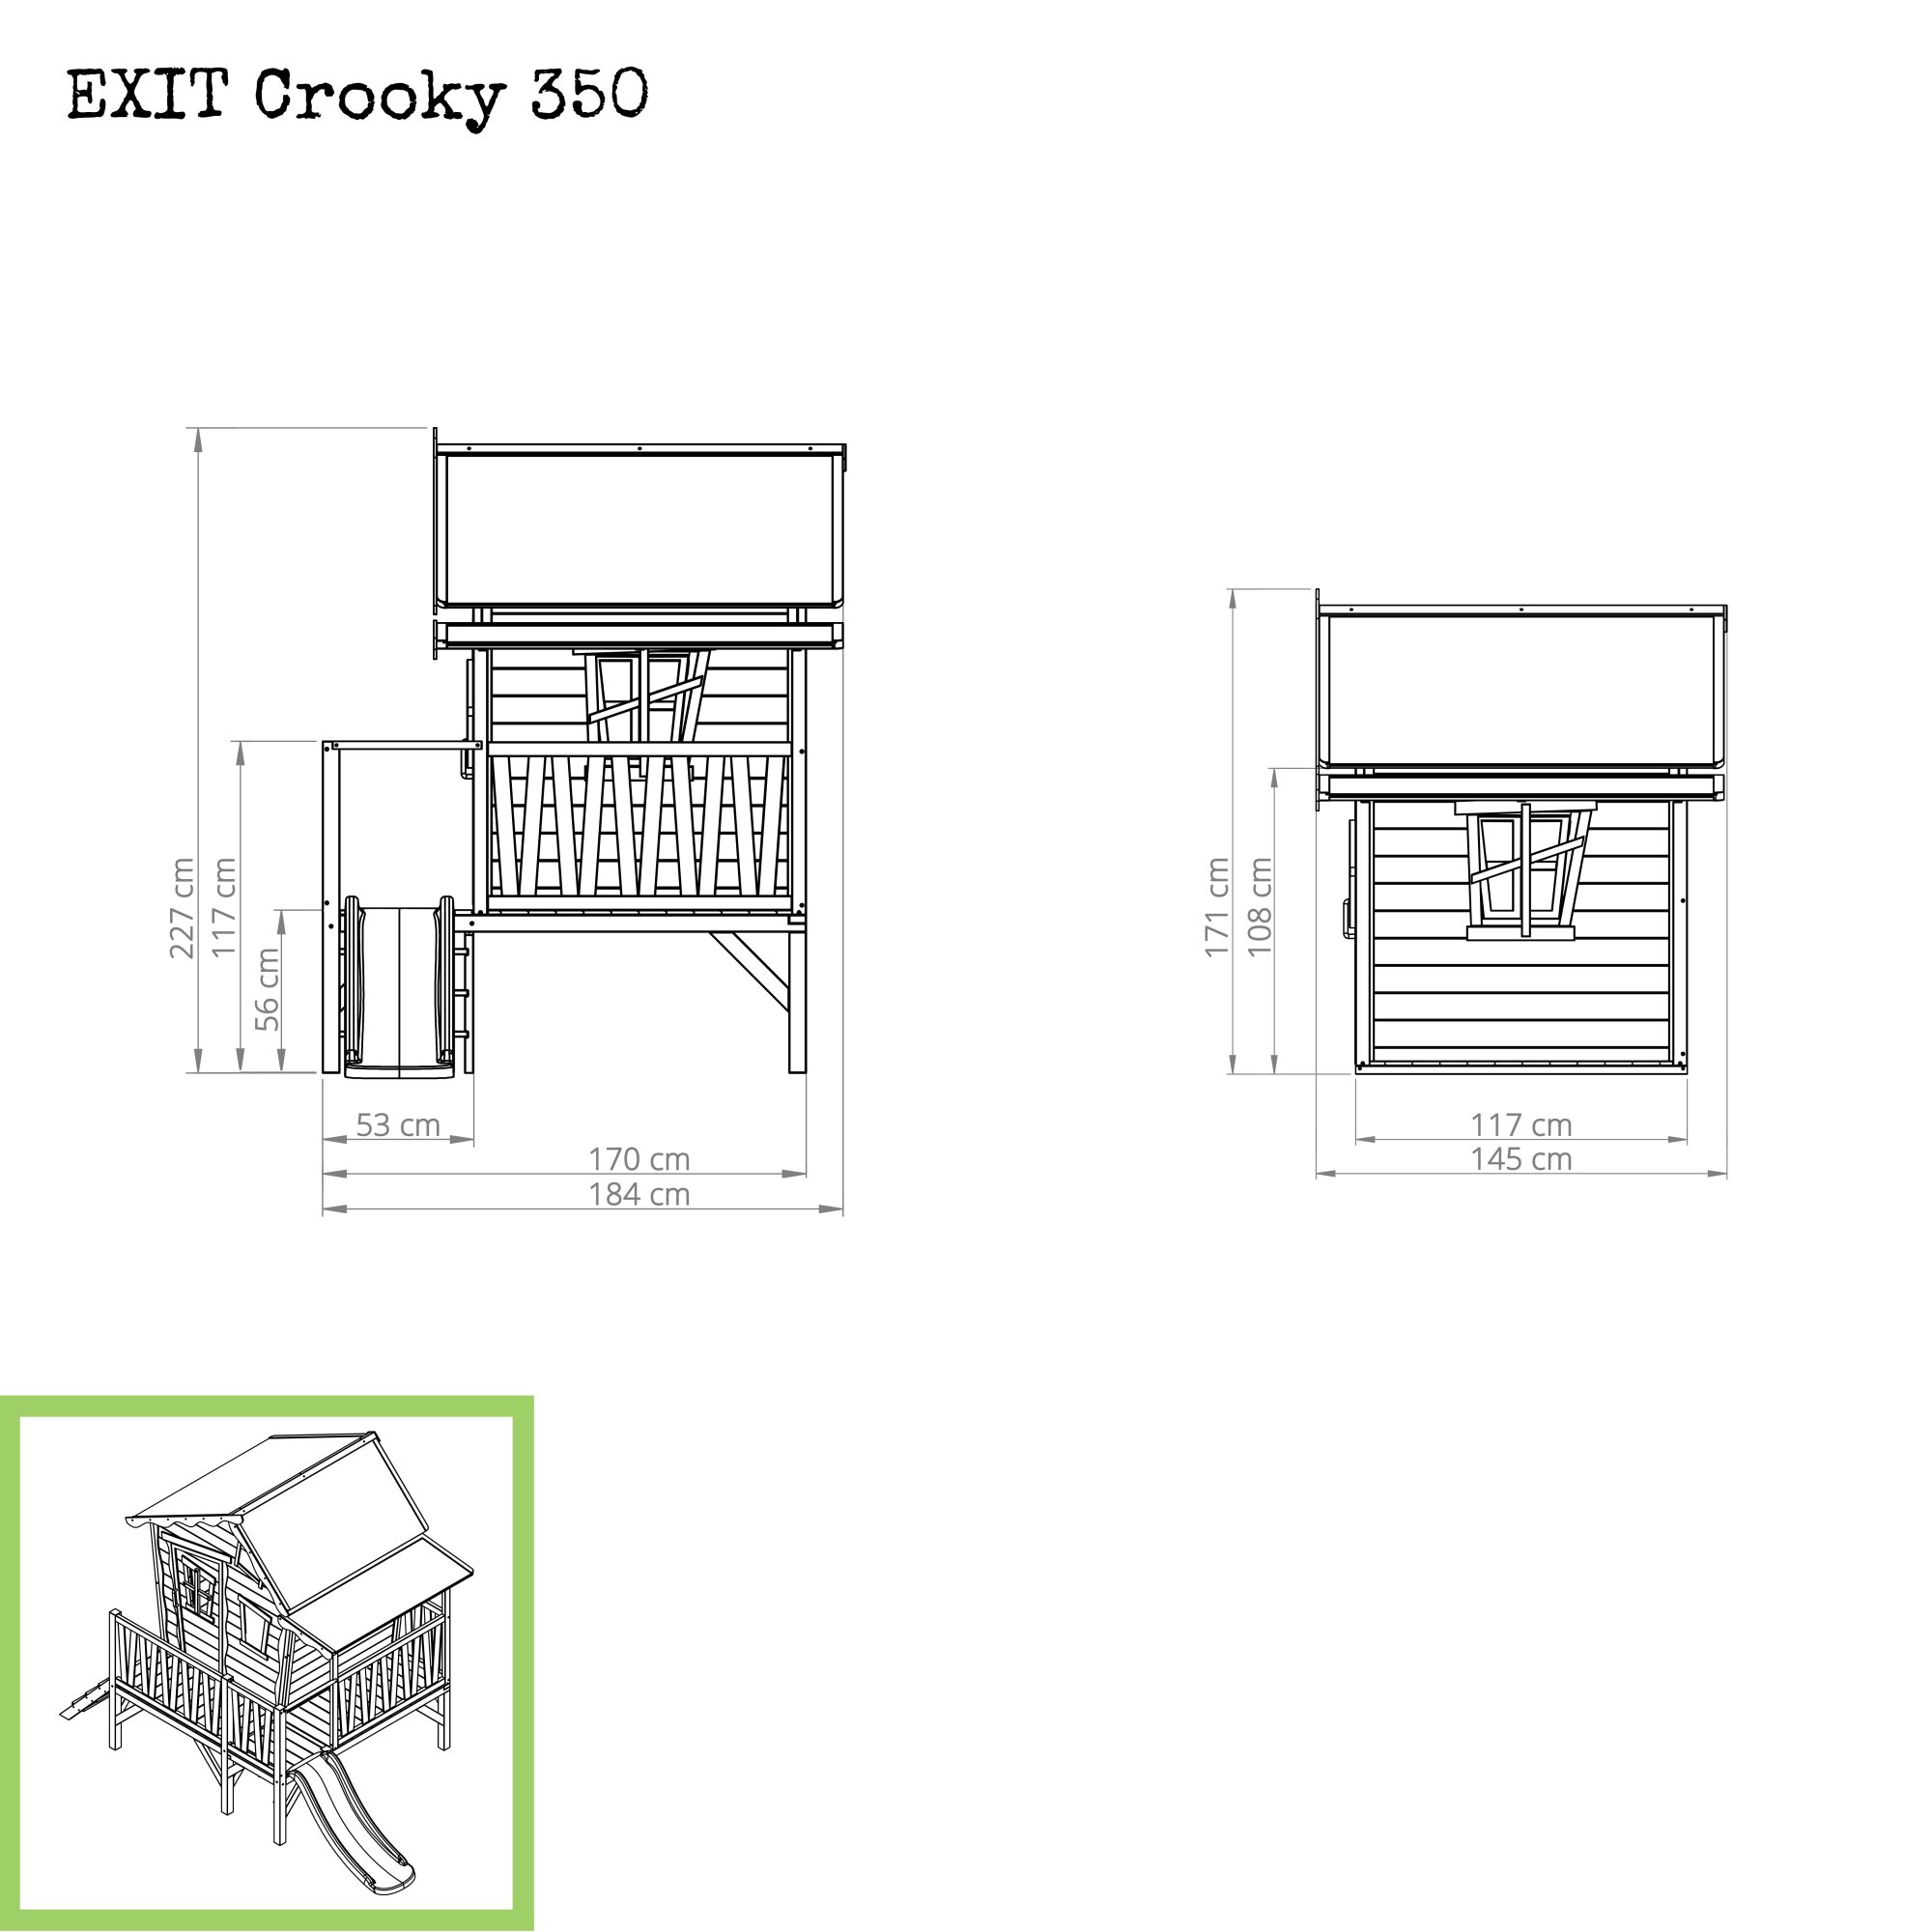 EXIT Crooky 350 Holzspielhaus graubeige Maße